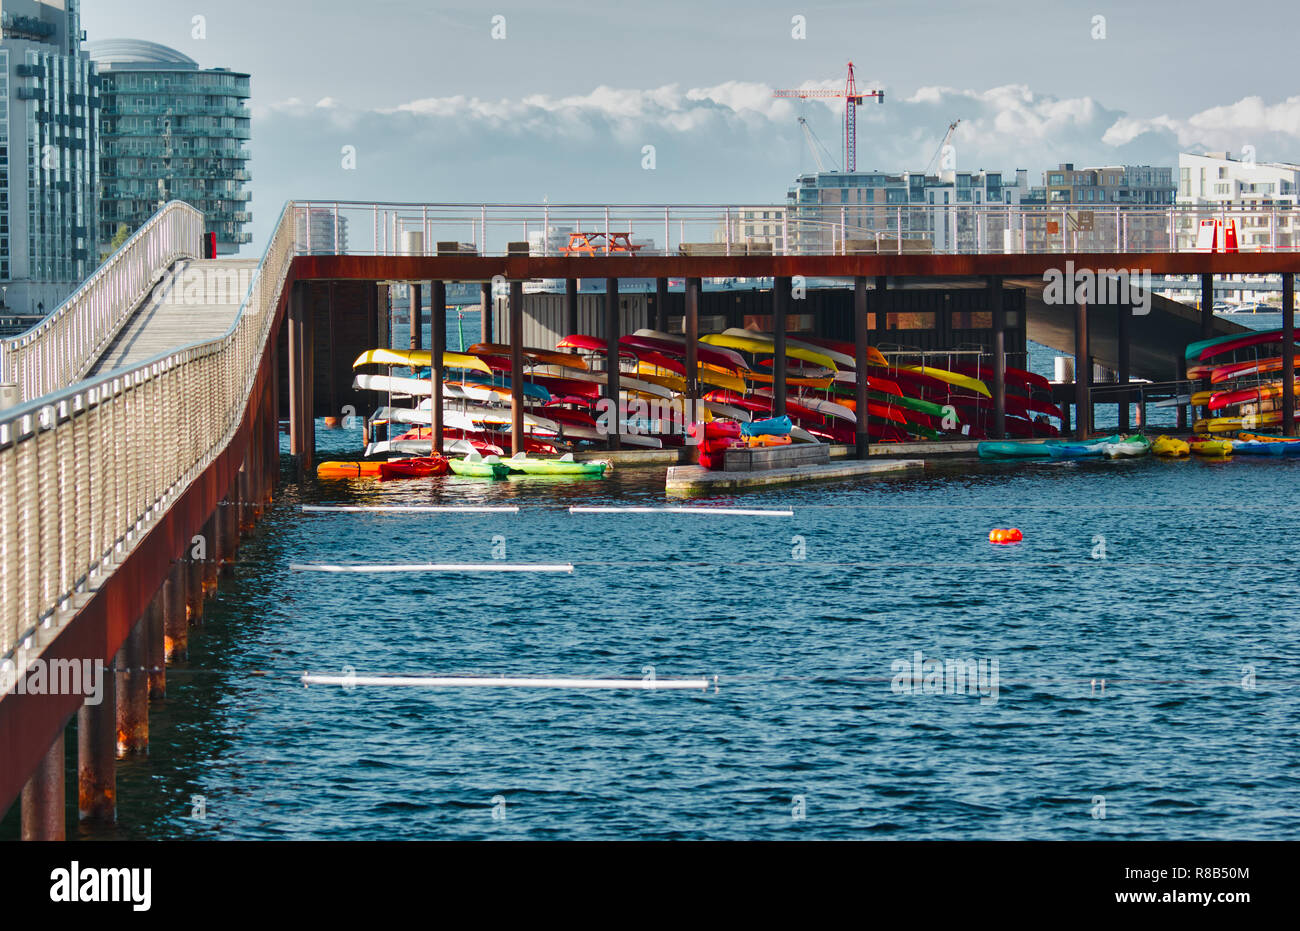 Kayaks, Kalvebod Brygge (Kalvebod Quay), Vesterbro, Copenhague, Dinamarca, Escandinavia Foto de stock